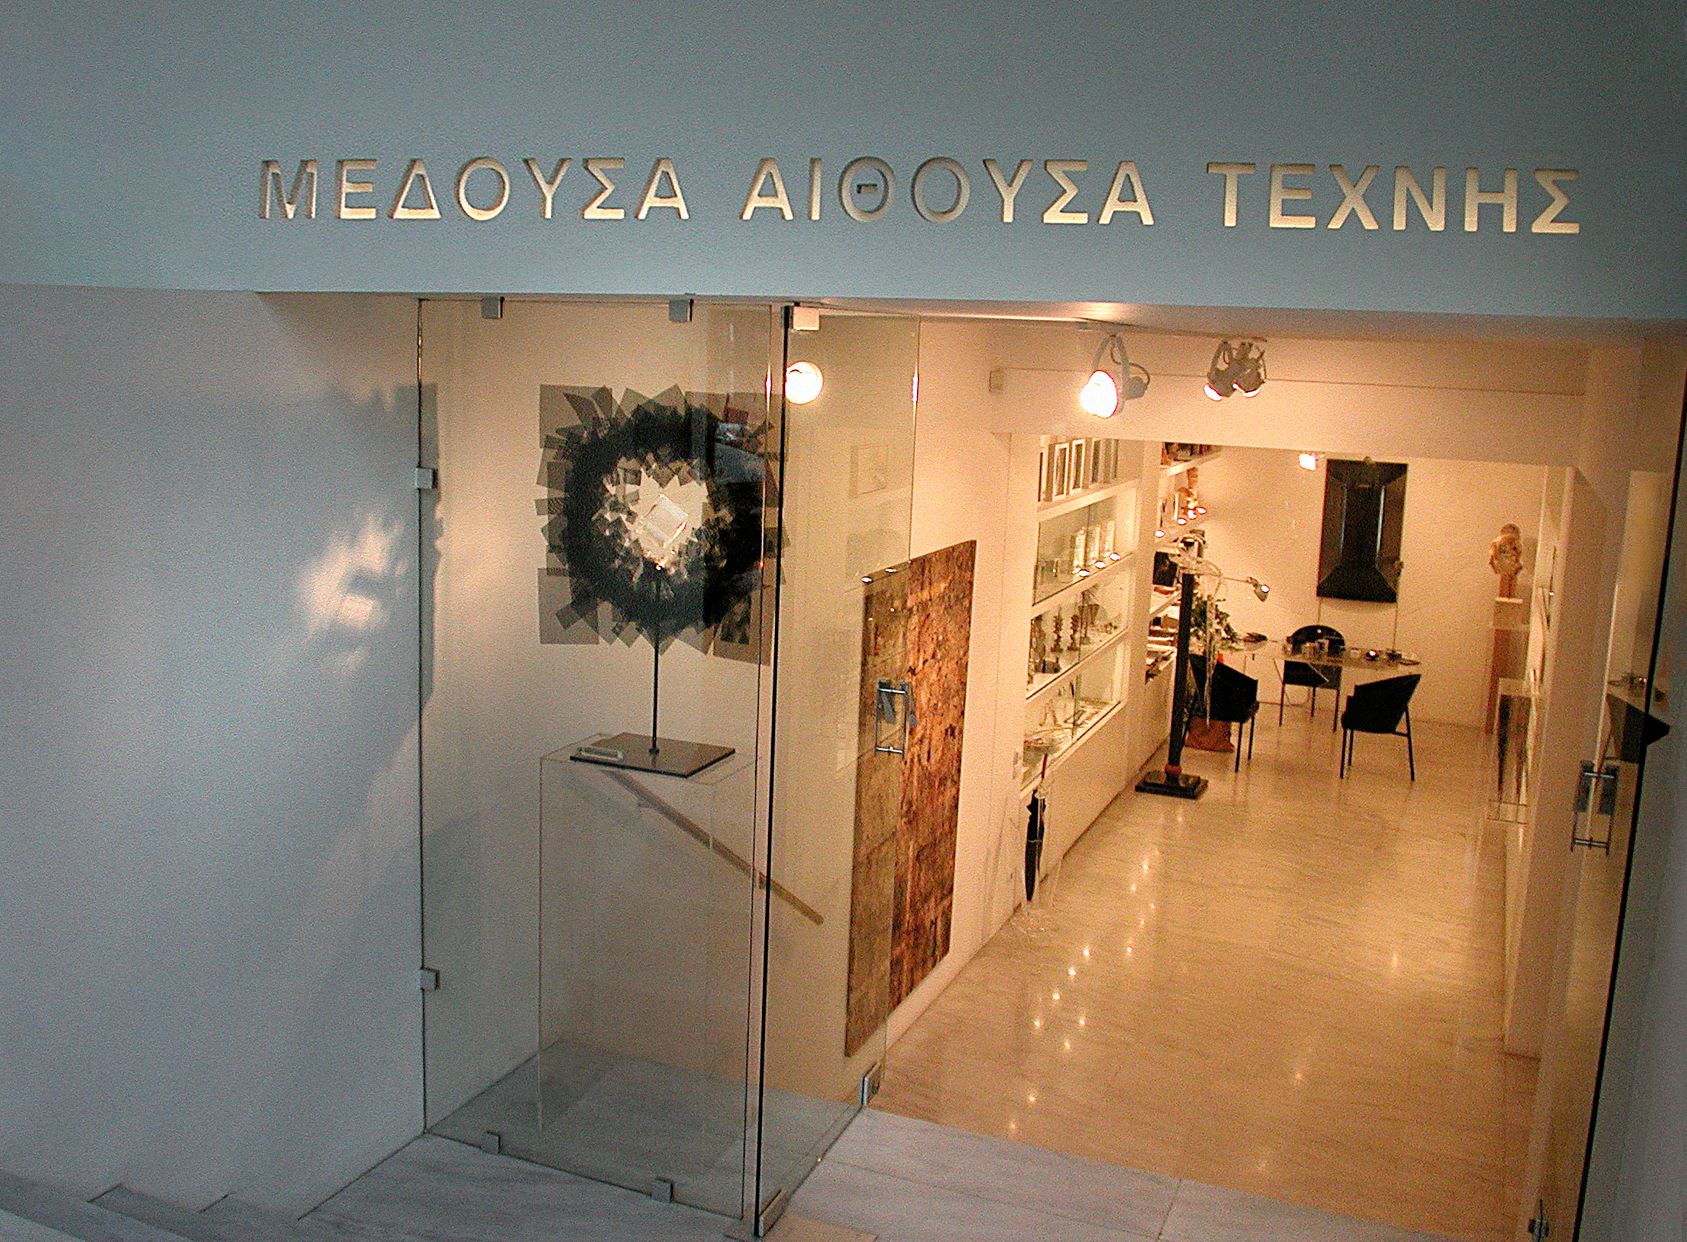 Μέδουσα Αίθουσα Τέχνης, Ξενοκράτους 7, Αθήνα